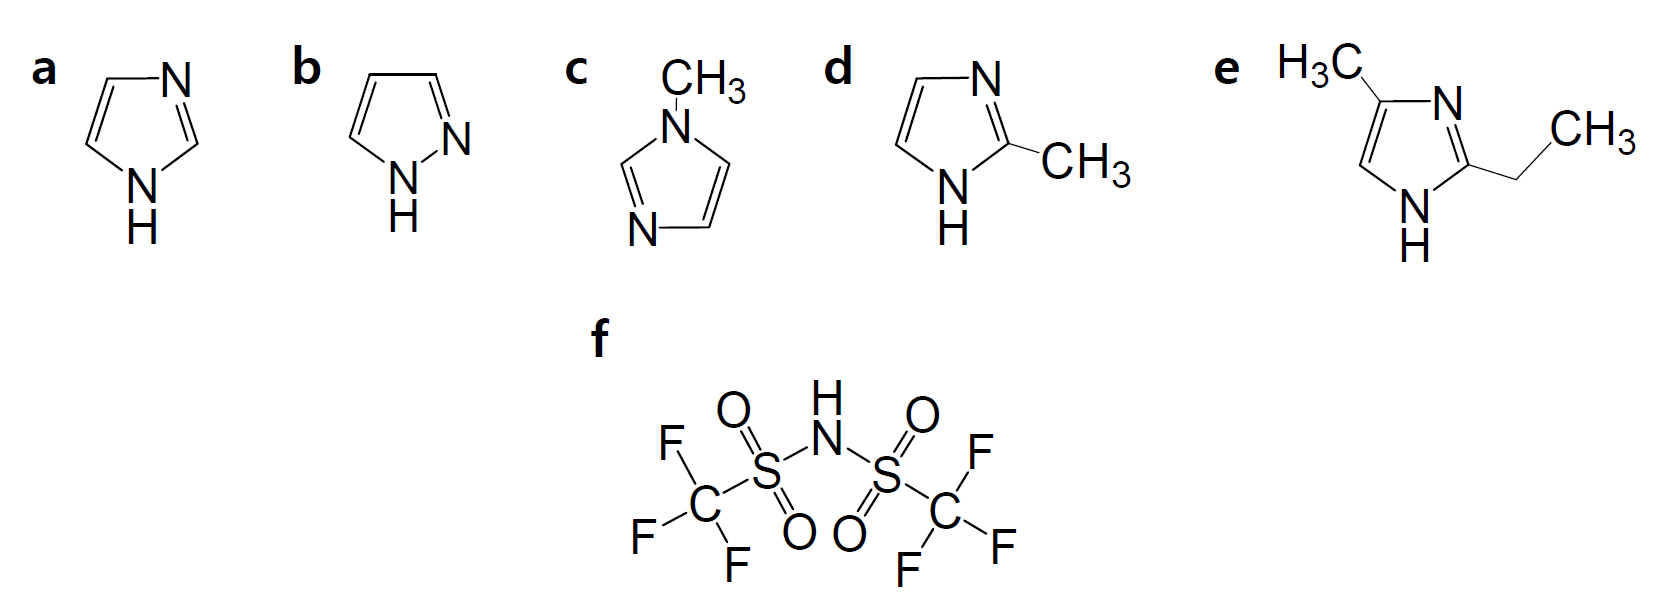 2차년도 연구에 사용된 이온성 액체의 양이온(a-e)과 음이온(f)의 화학구조; a) imidazole [Im], b) pyrazole [Py], c) 1-methyl imidazole [1-MIm], d) 2-methyl imidazole [2-MIm], e) 2-ethyl-4-methyl imidazole [2-E-4-MIm], f) bis(trifluoromethane)sulfonimide